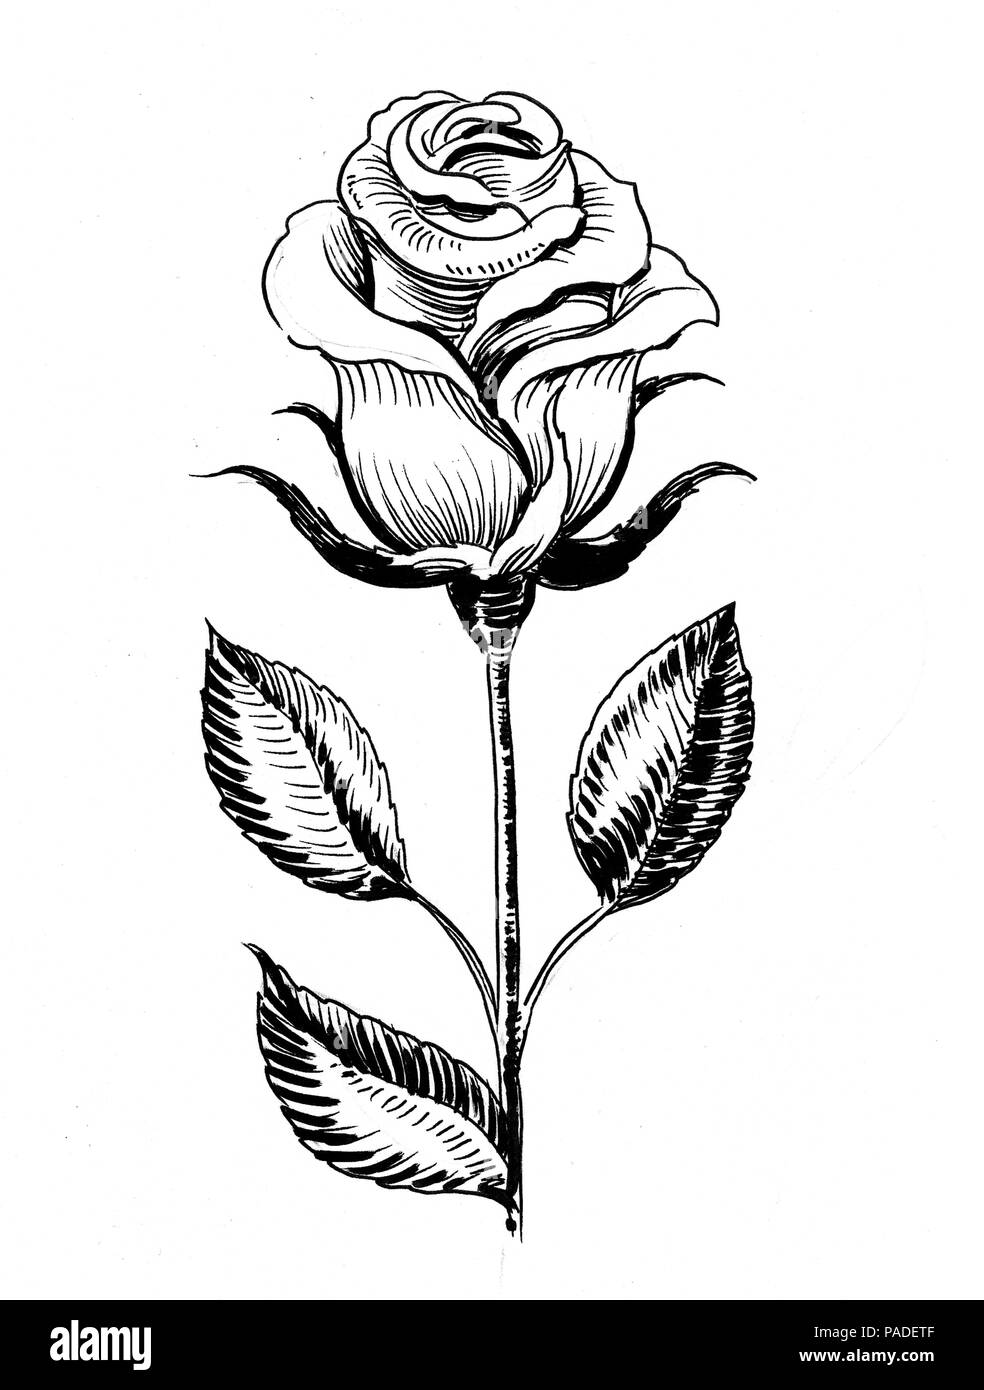 White rose flower. Ink black and white illustration Stock Photo ...